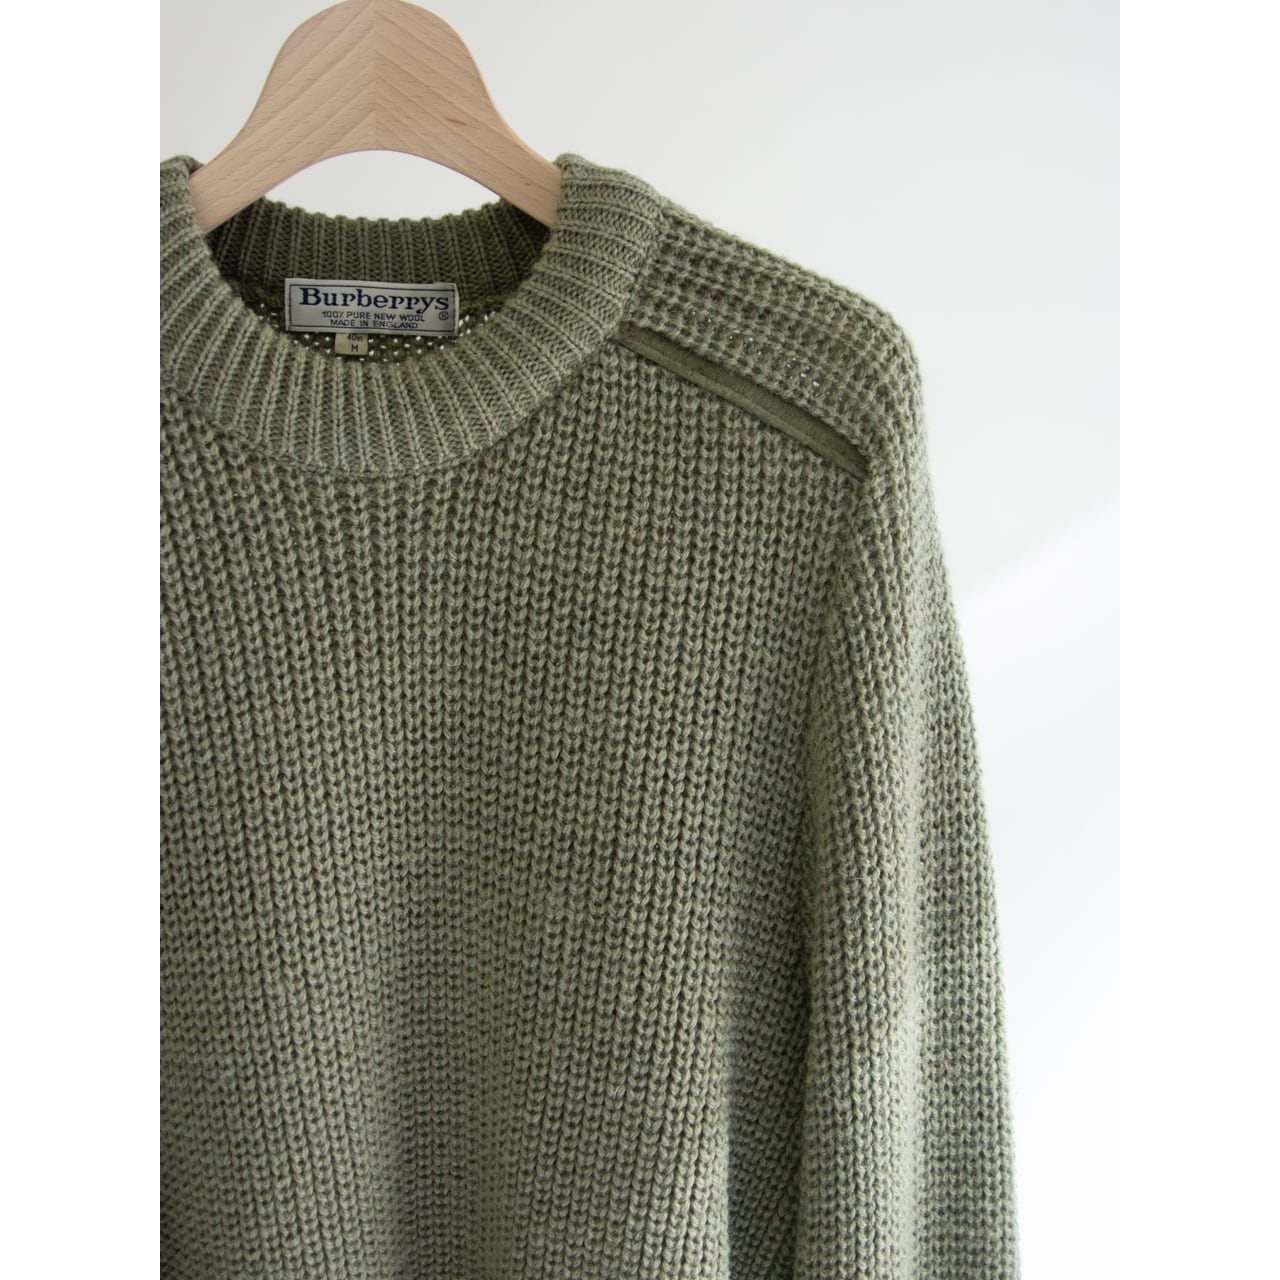 【Burberrys】Made in England 80-90s 100% Wool Commando Sweater（バーバリーズ 英国製 ウールコマンドセーター ニット）